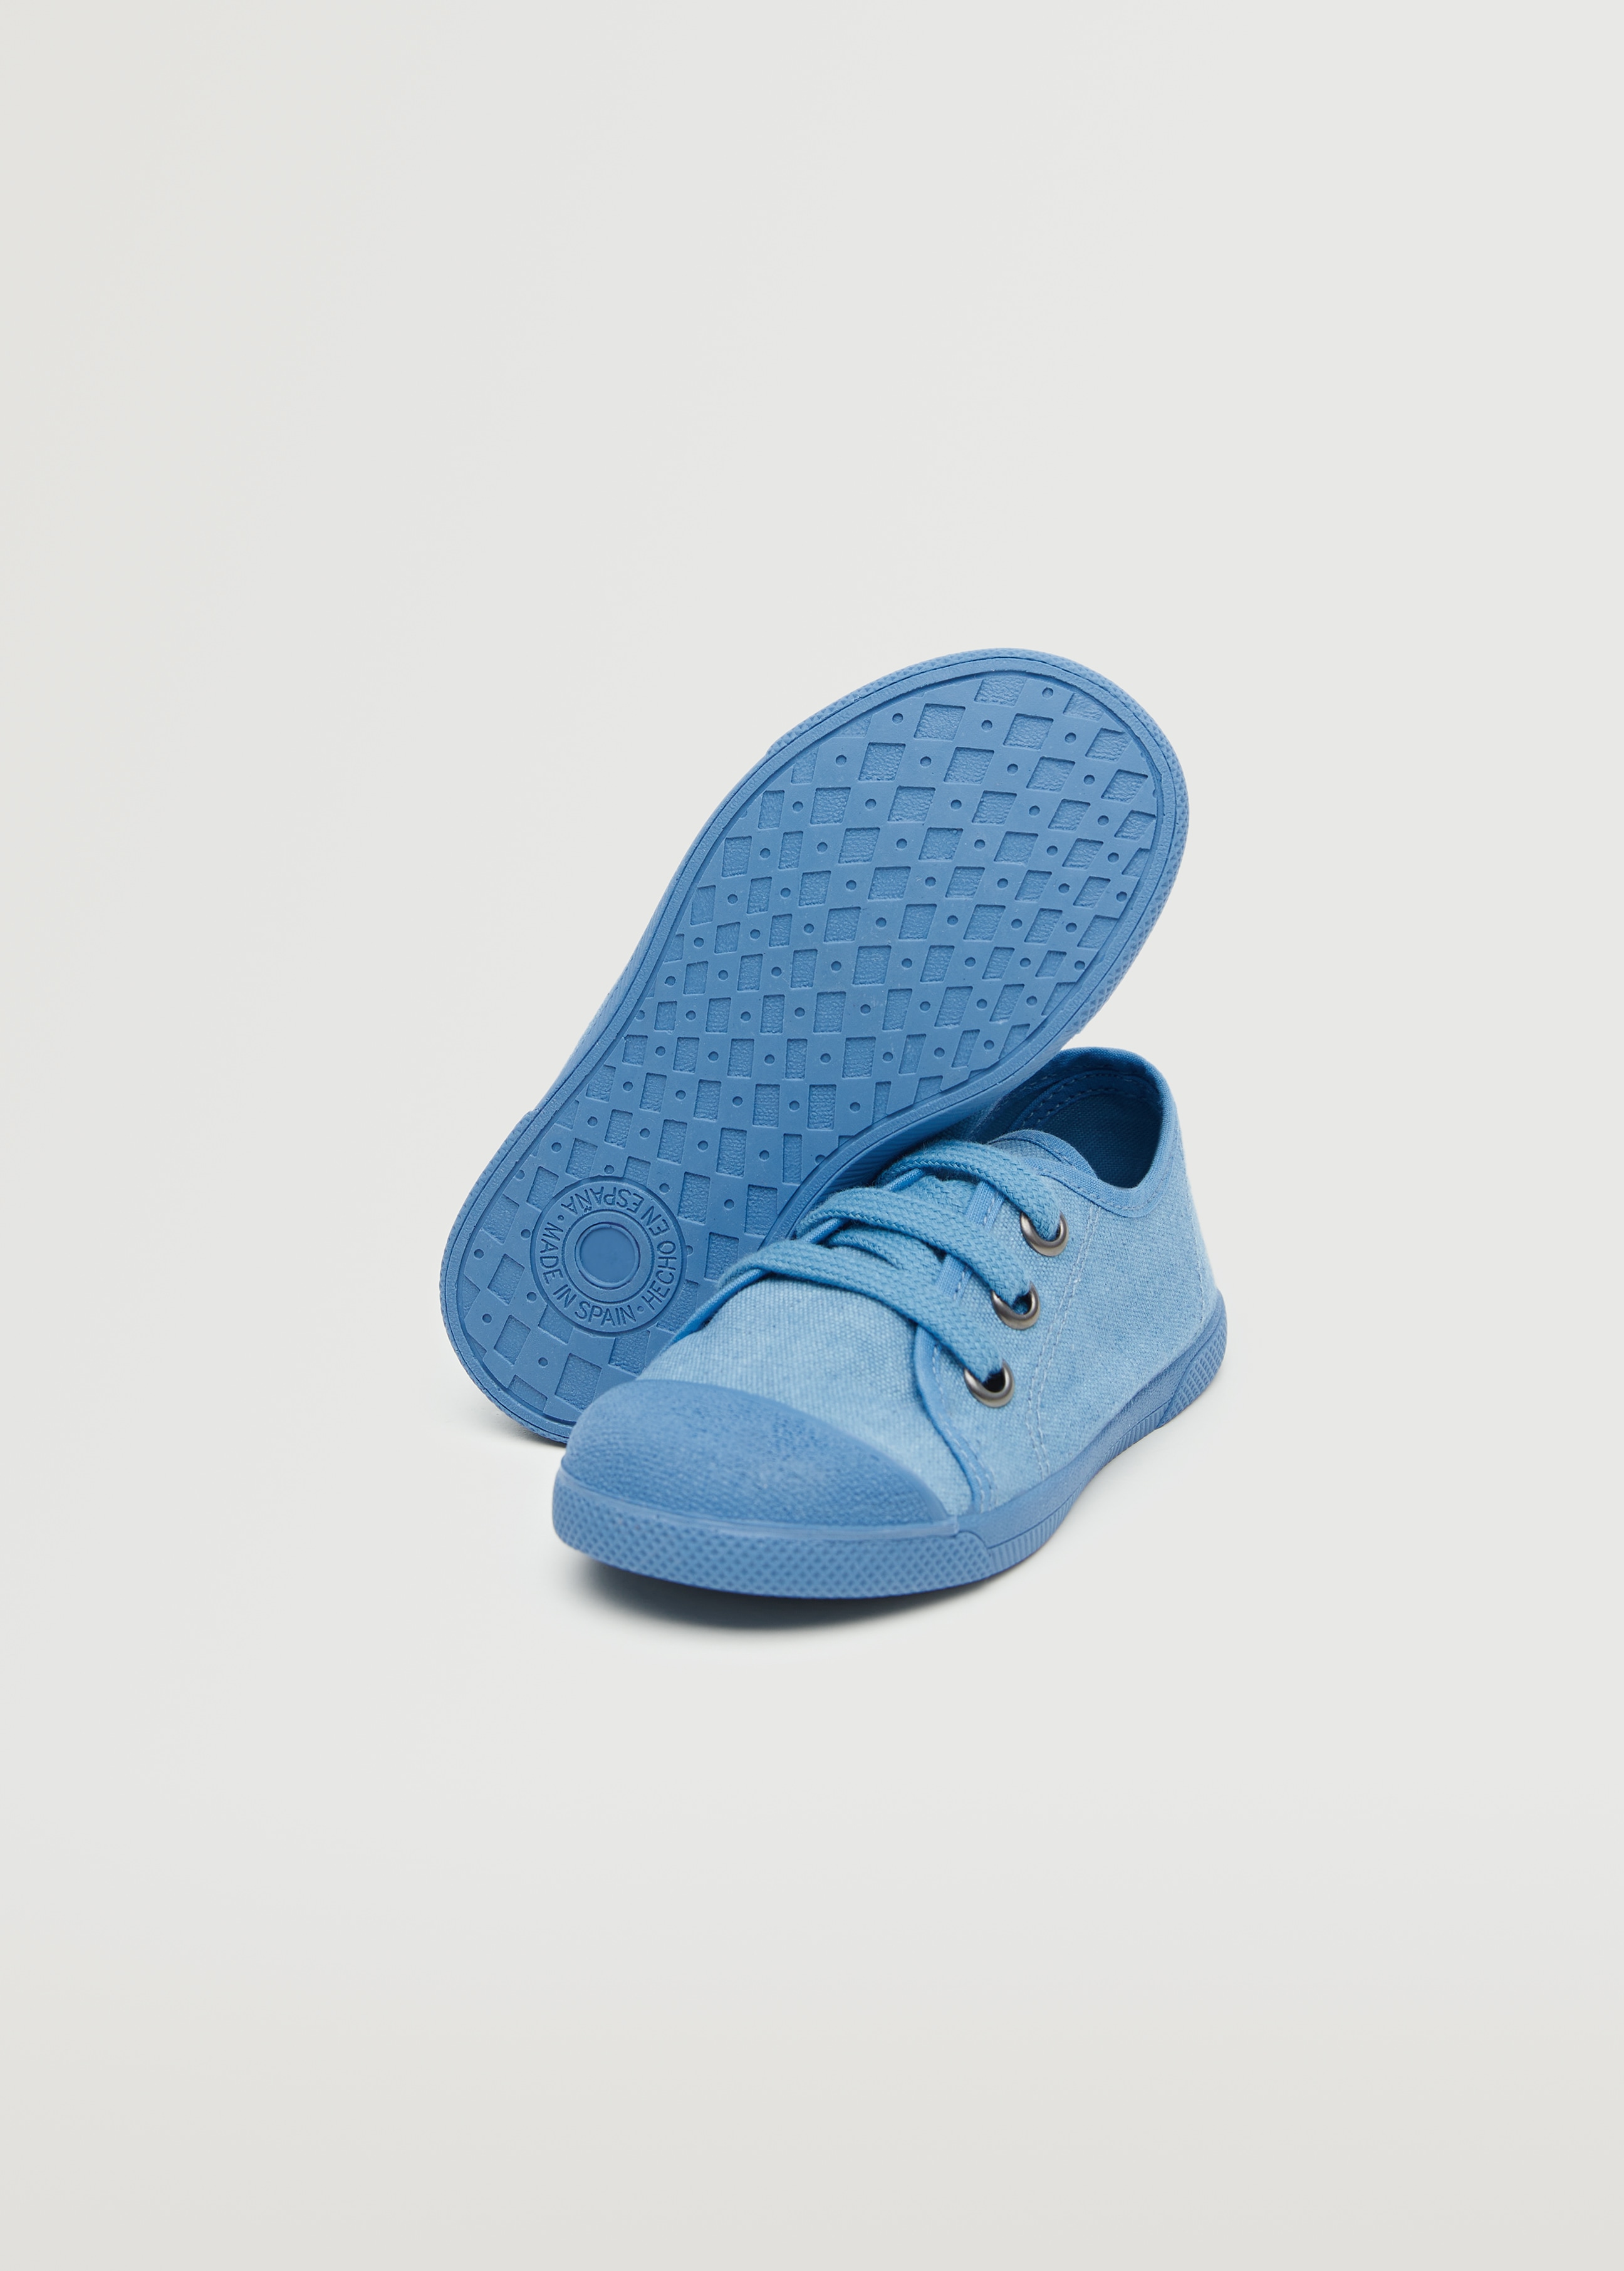 Αθλητικό παπούτσι κορδόνια - Λεπτομέρεια του προϊόντος 3